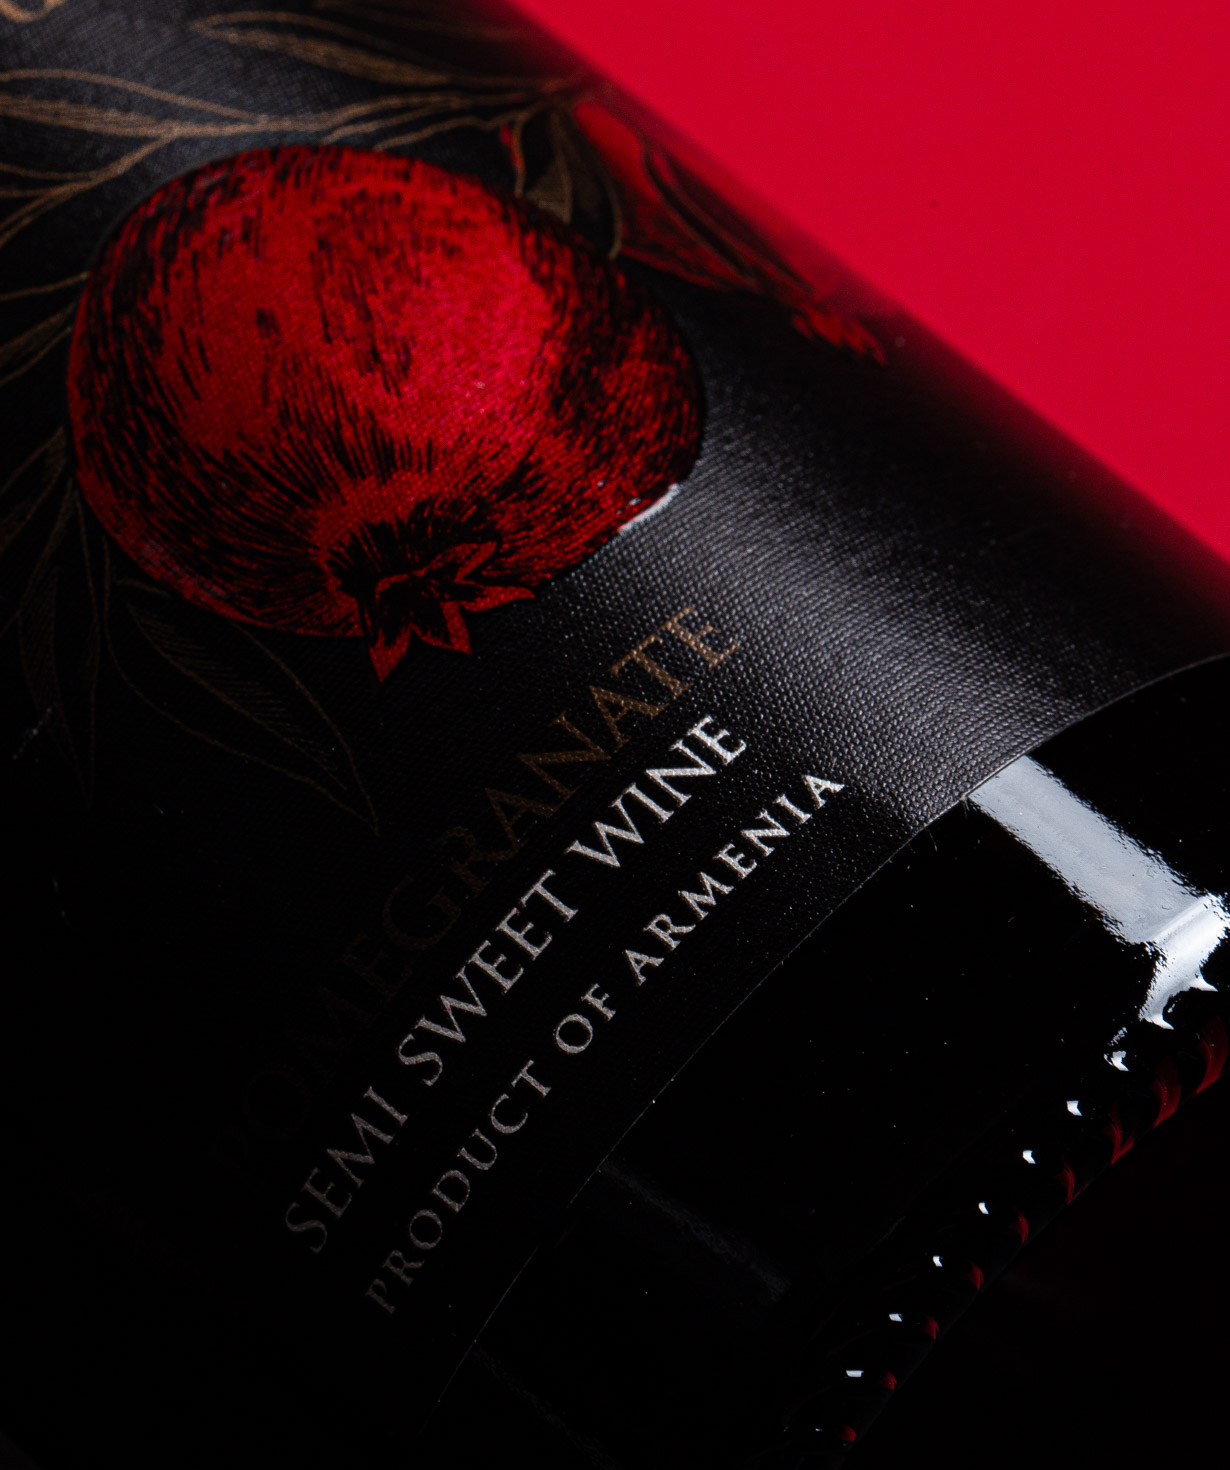 Вино «Matevosyan» Гранатовое, красное, полусладкое, 9%, 750 мл